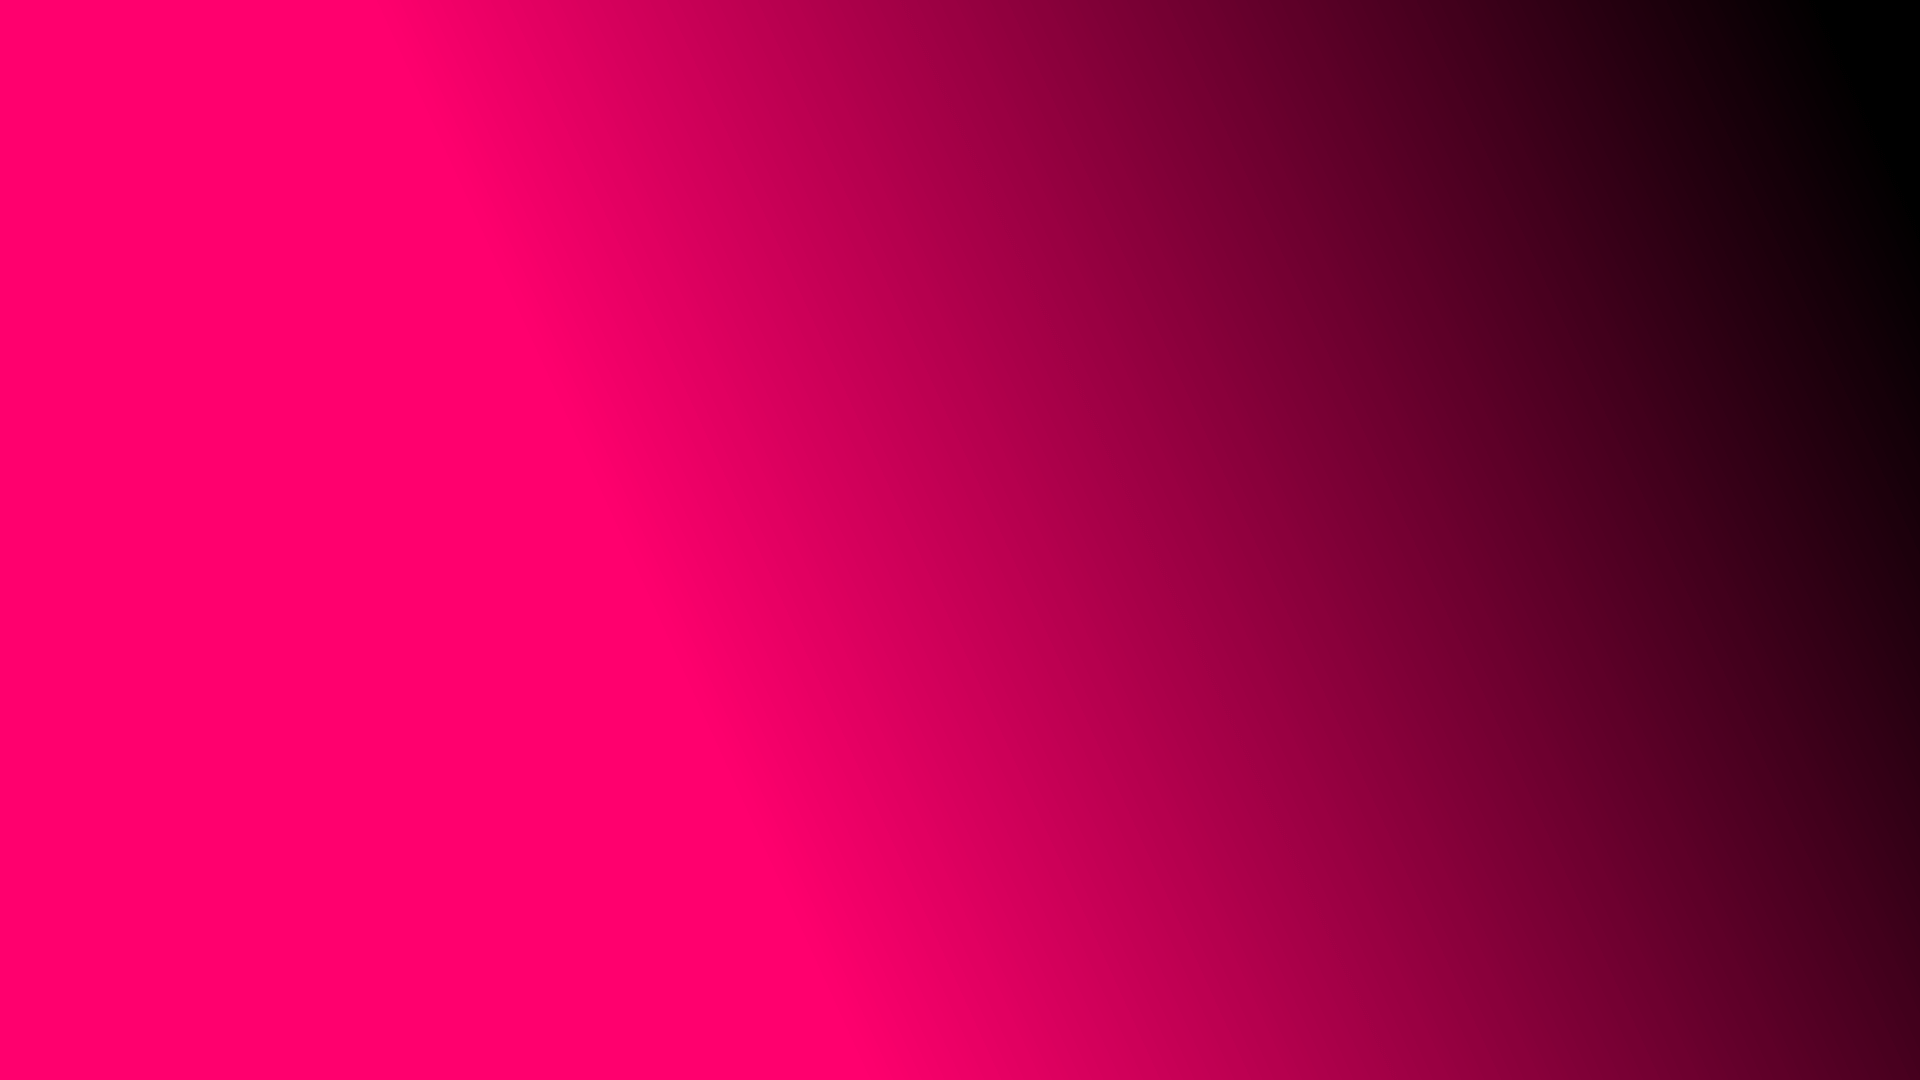 dark pink gradient background